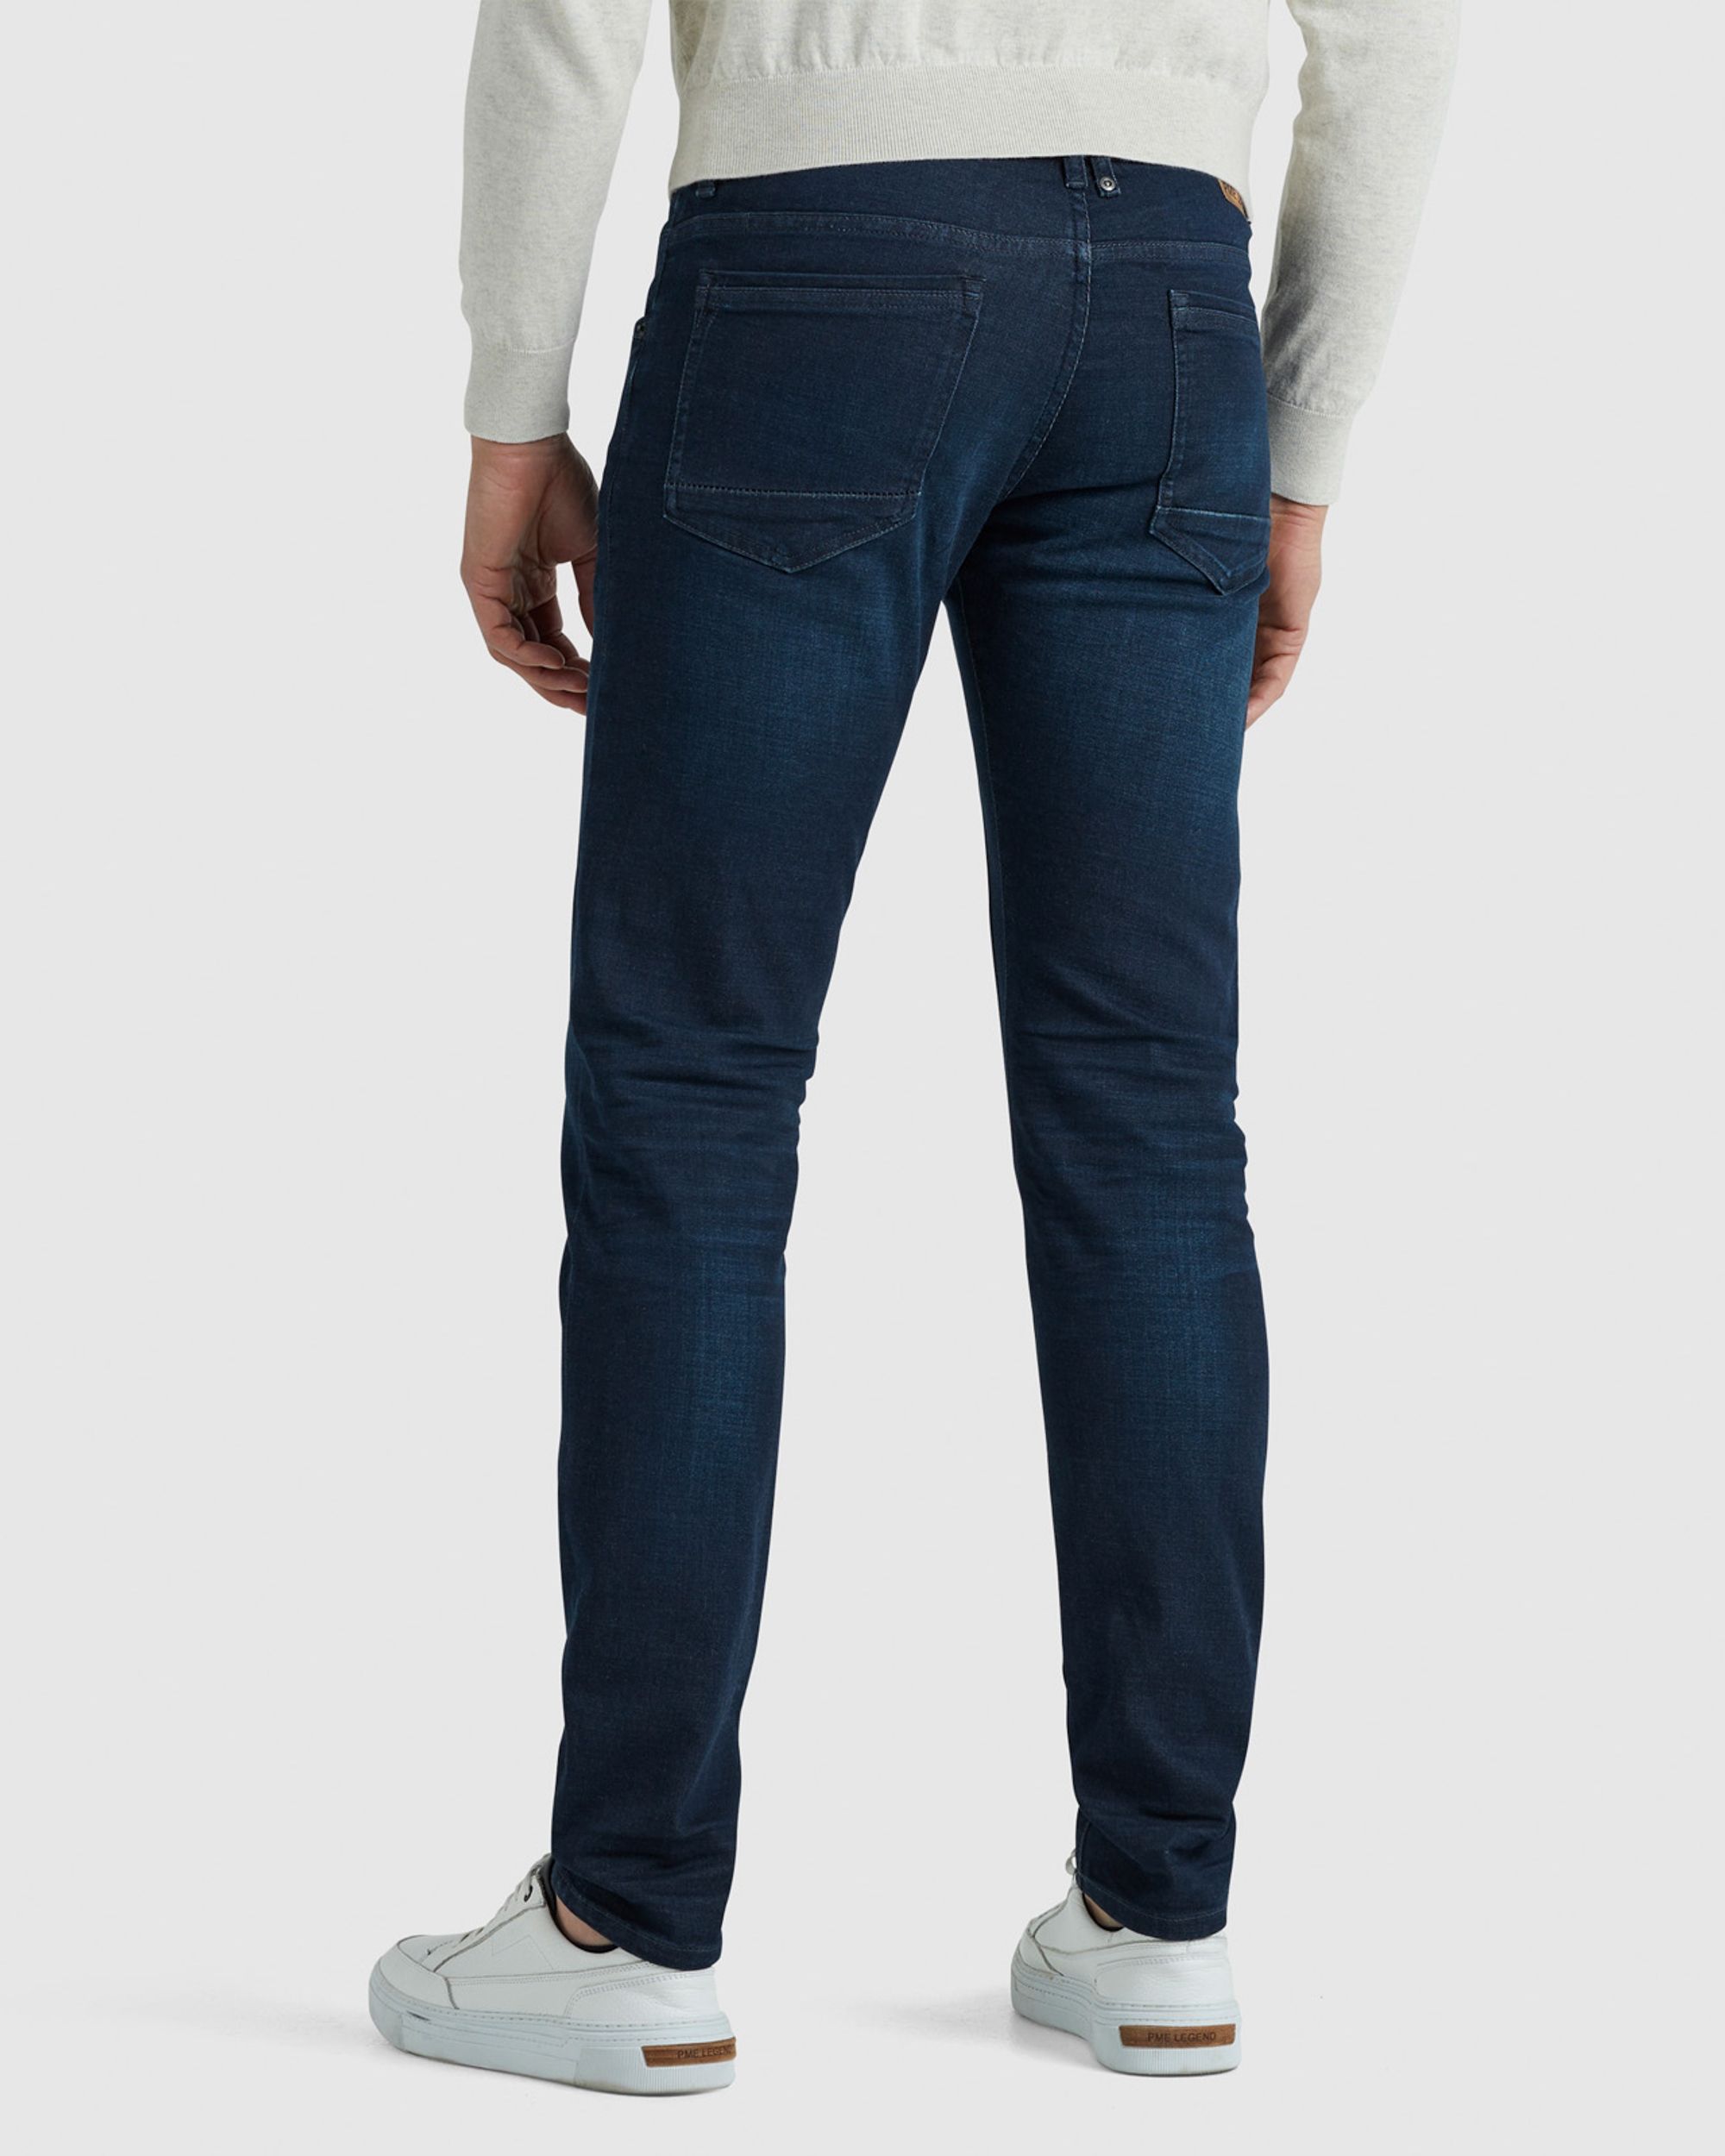 PME Legend Tailwheel Jeans Donker blauw 086774-001-28/30